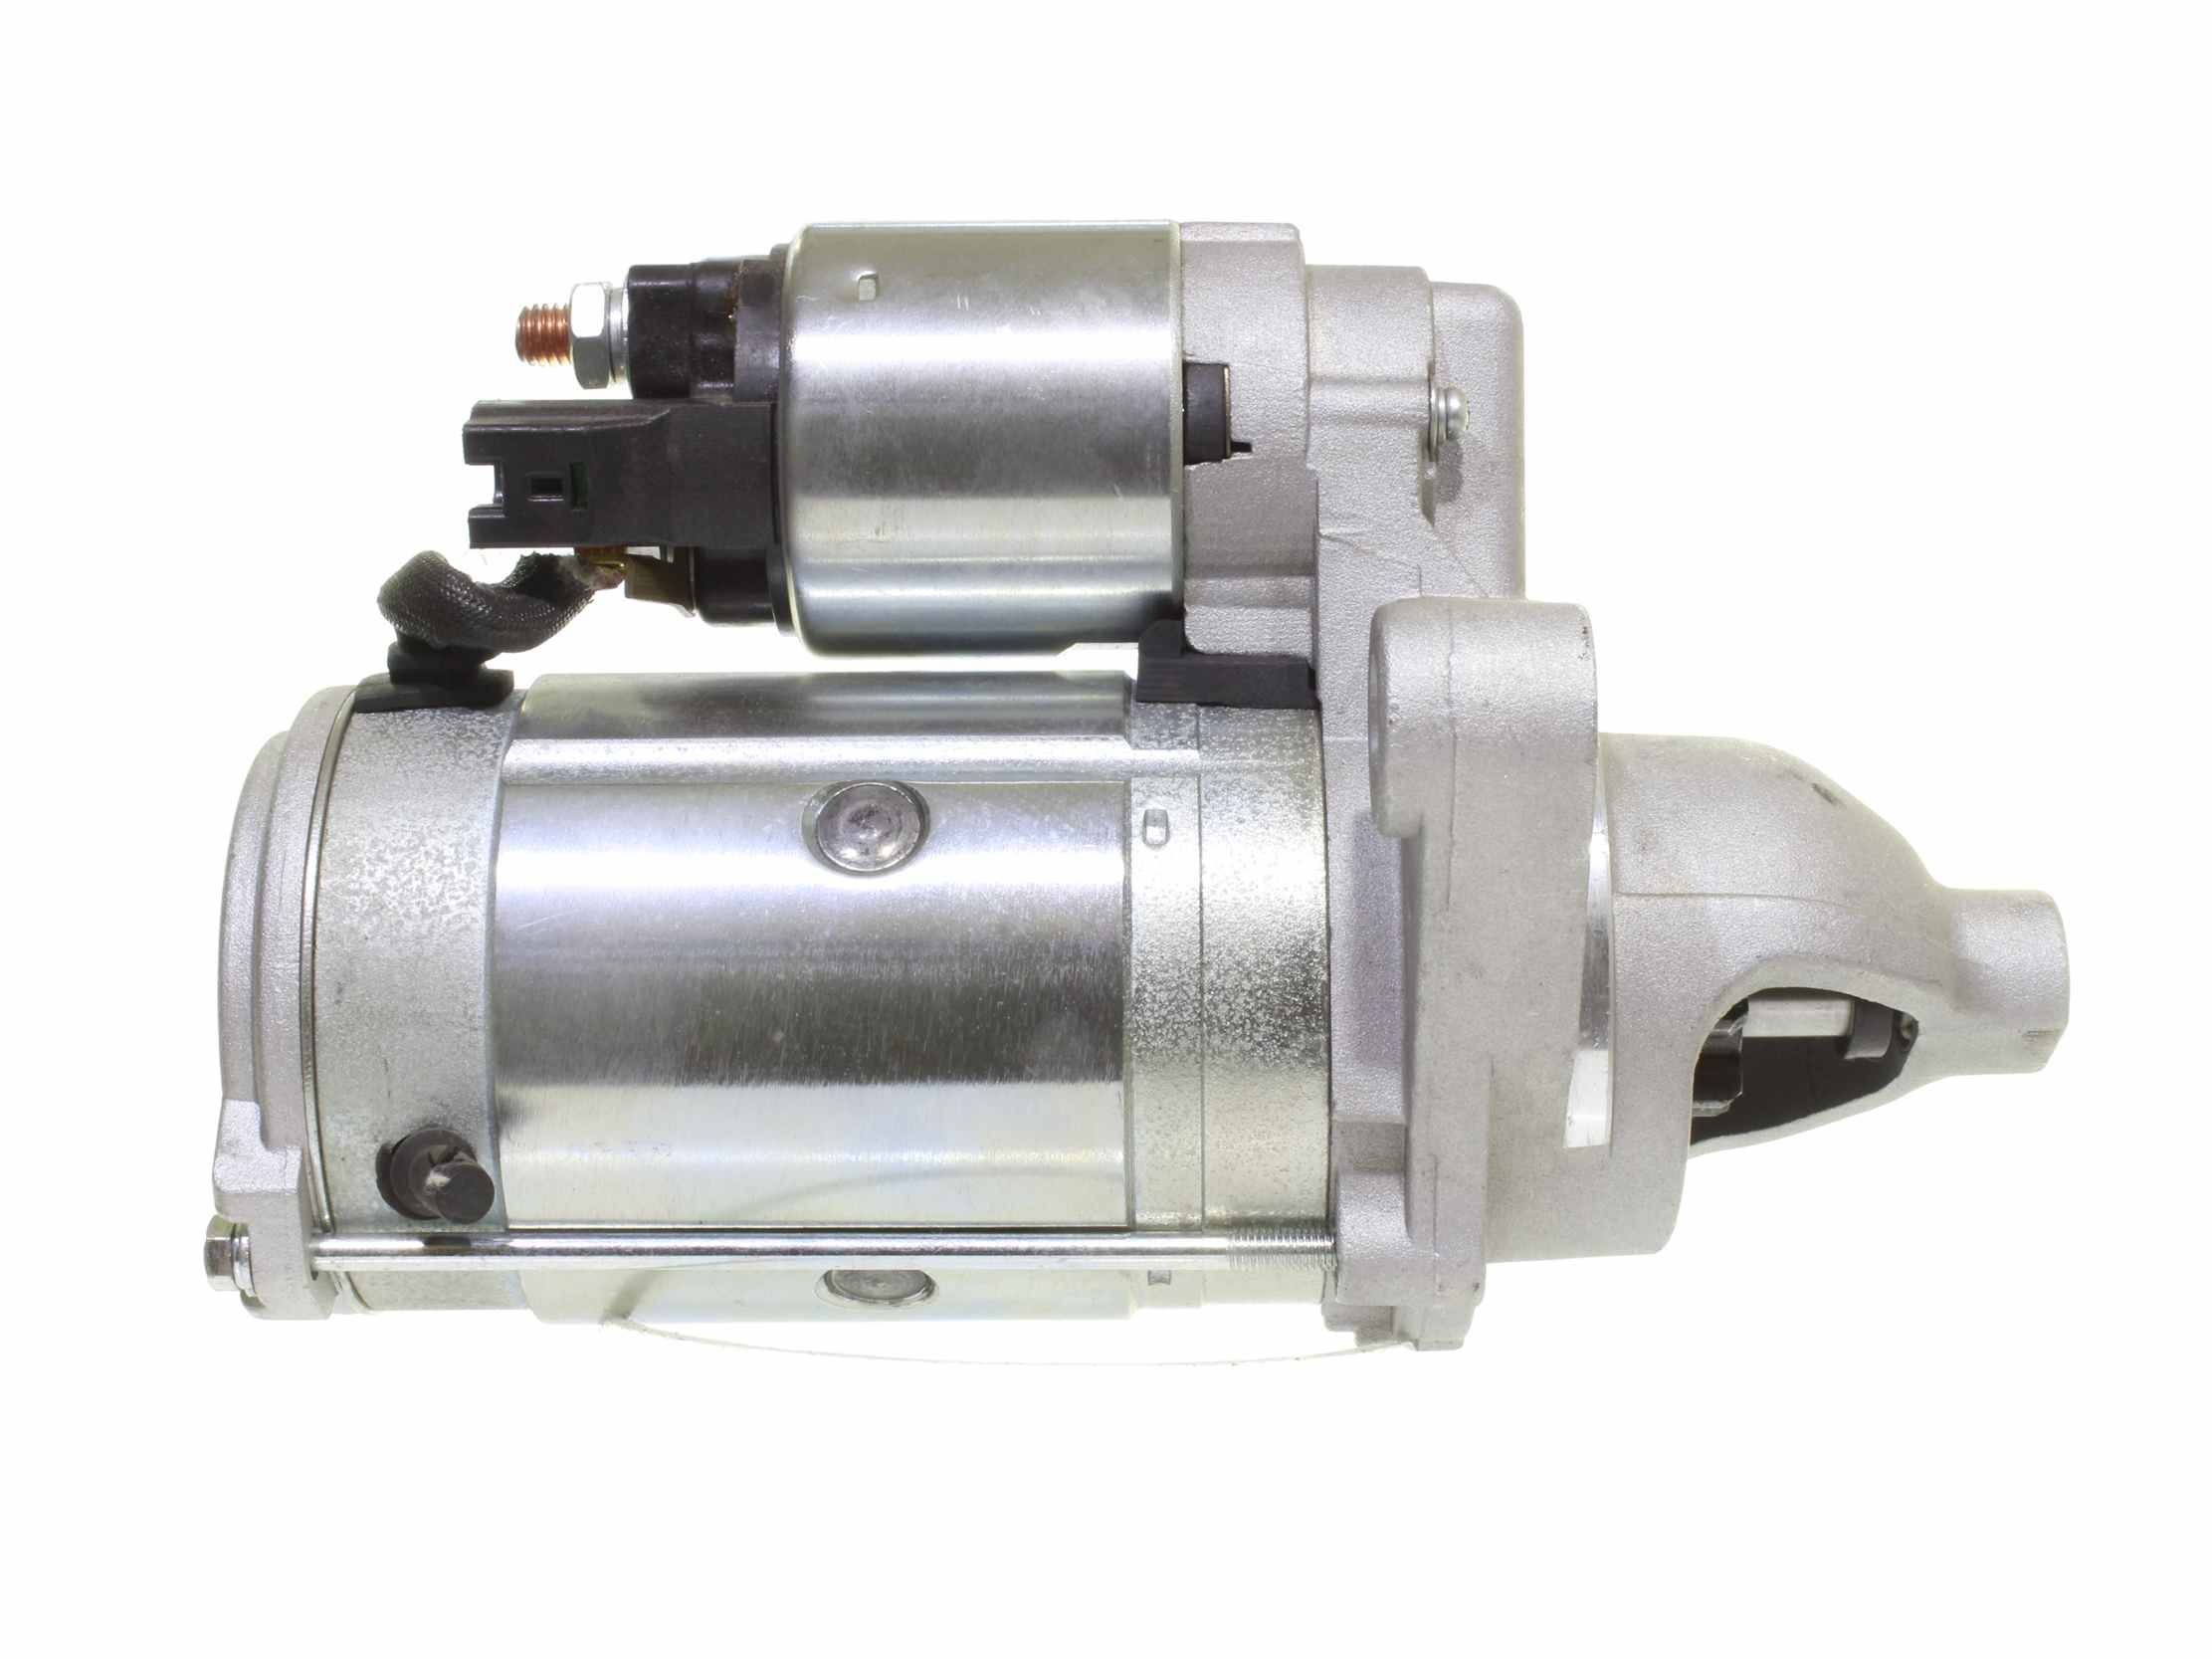 10439575 Starter motor RNLTS24E3 ALANKO 12V, 2kW, B+/50